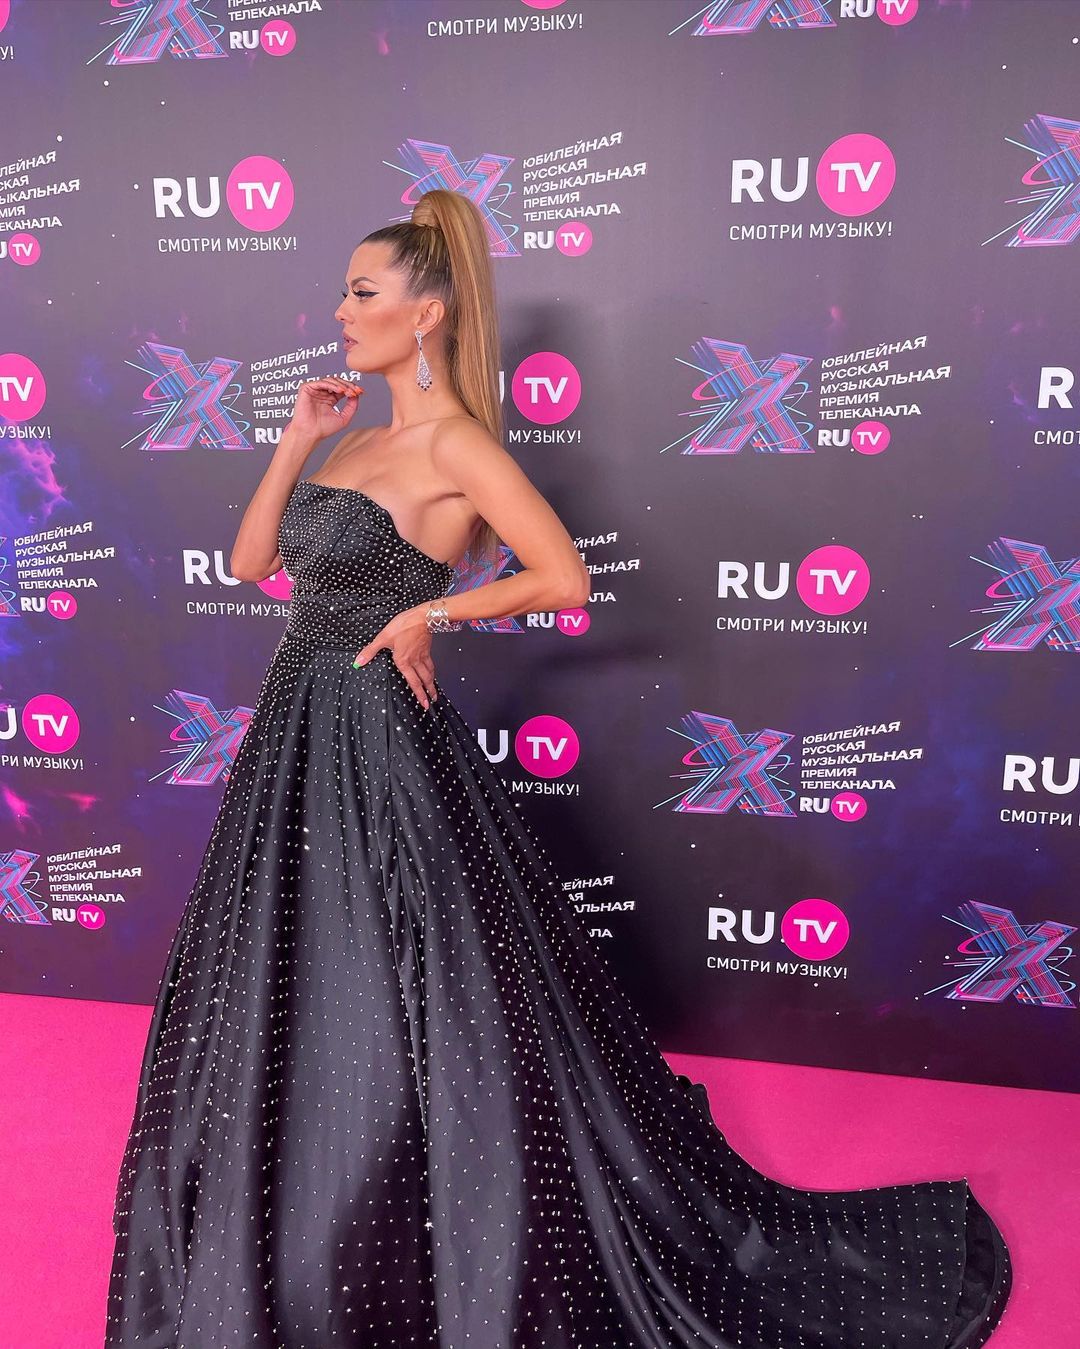 Рейтинг дня: Виктория Боня на премии "Ру-тв" предстала в чёрном платье со стразами